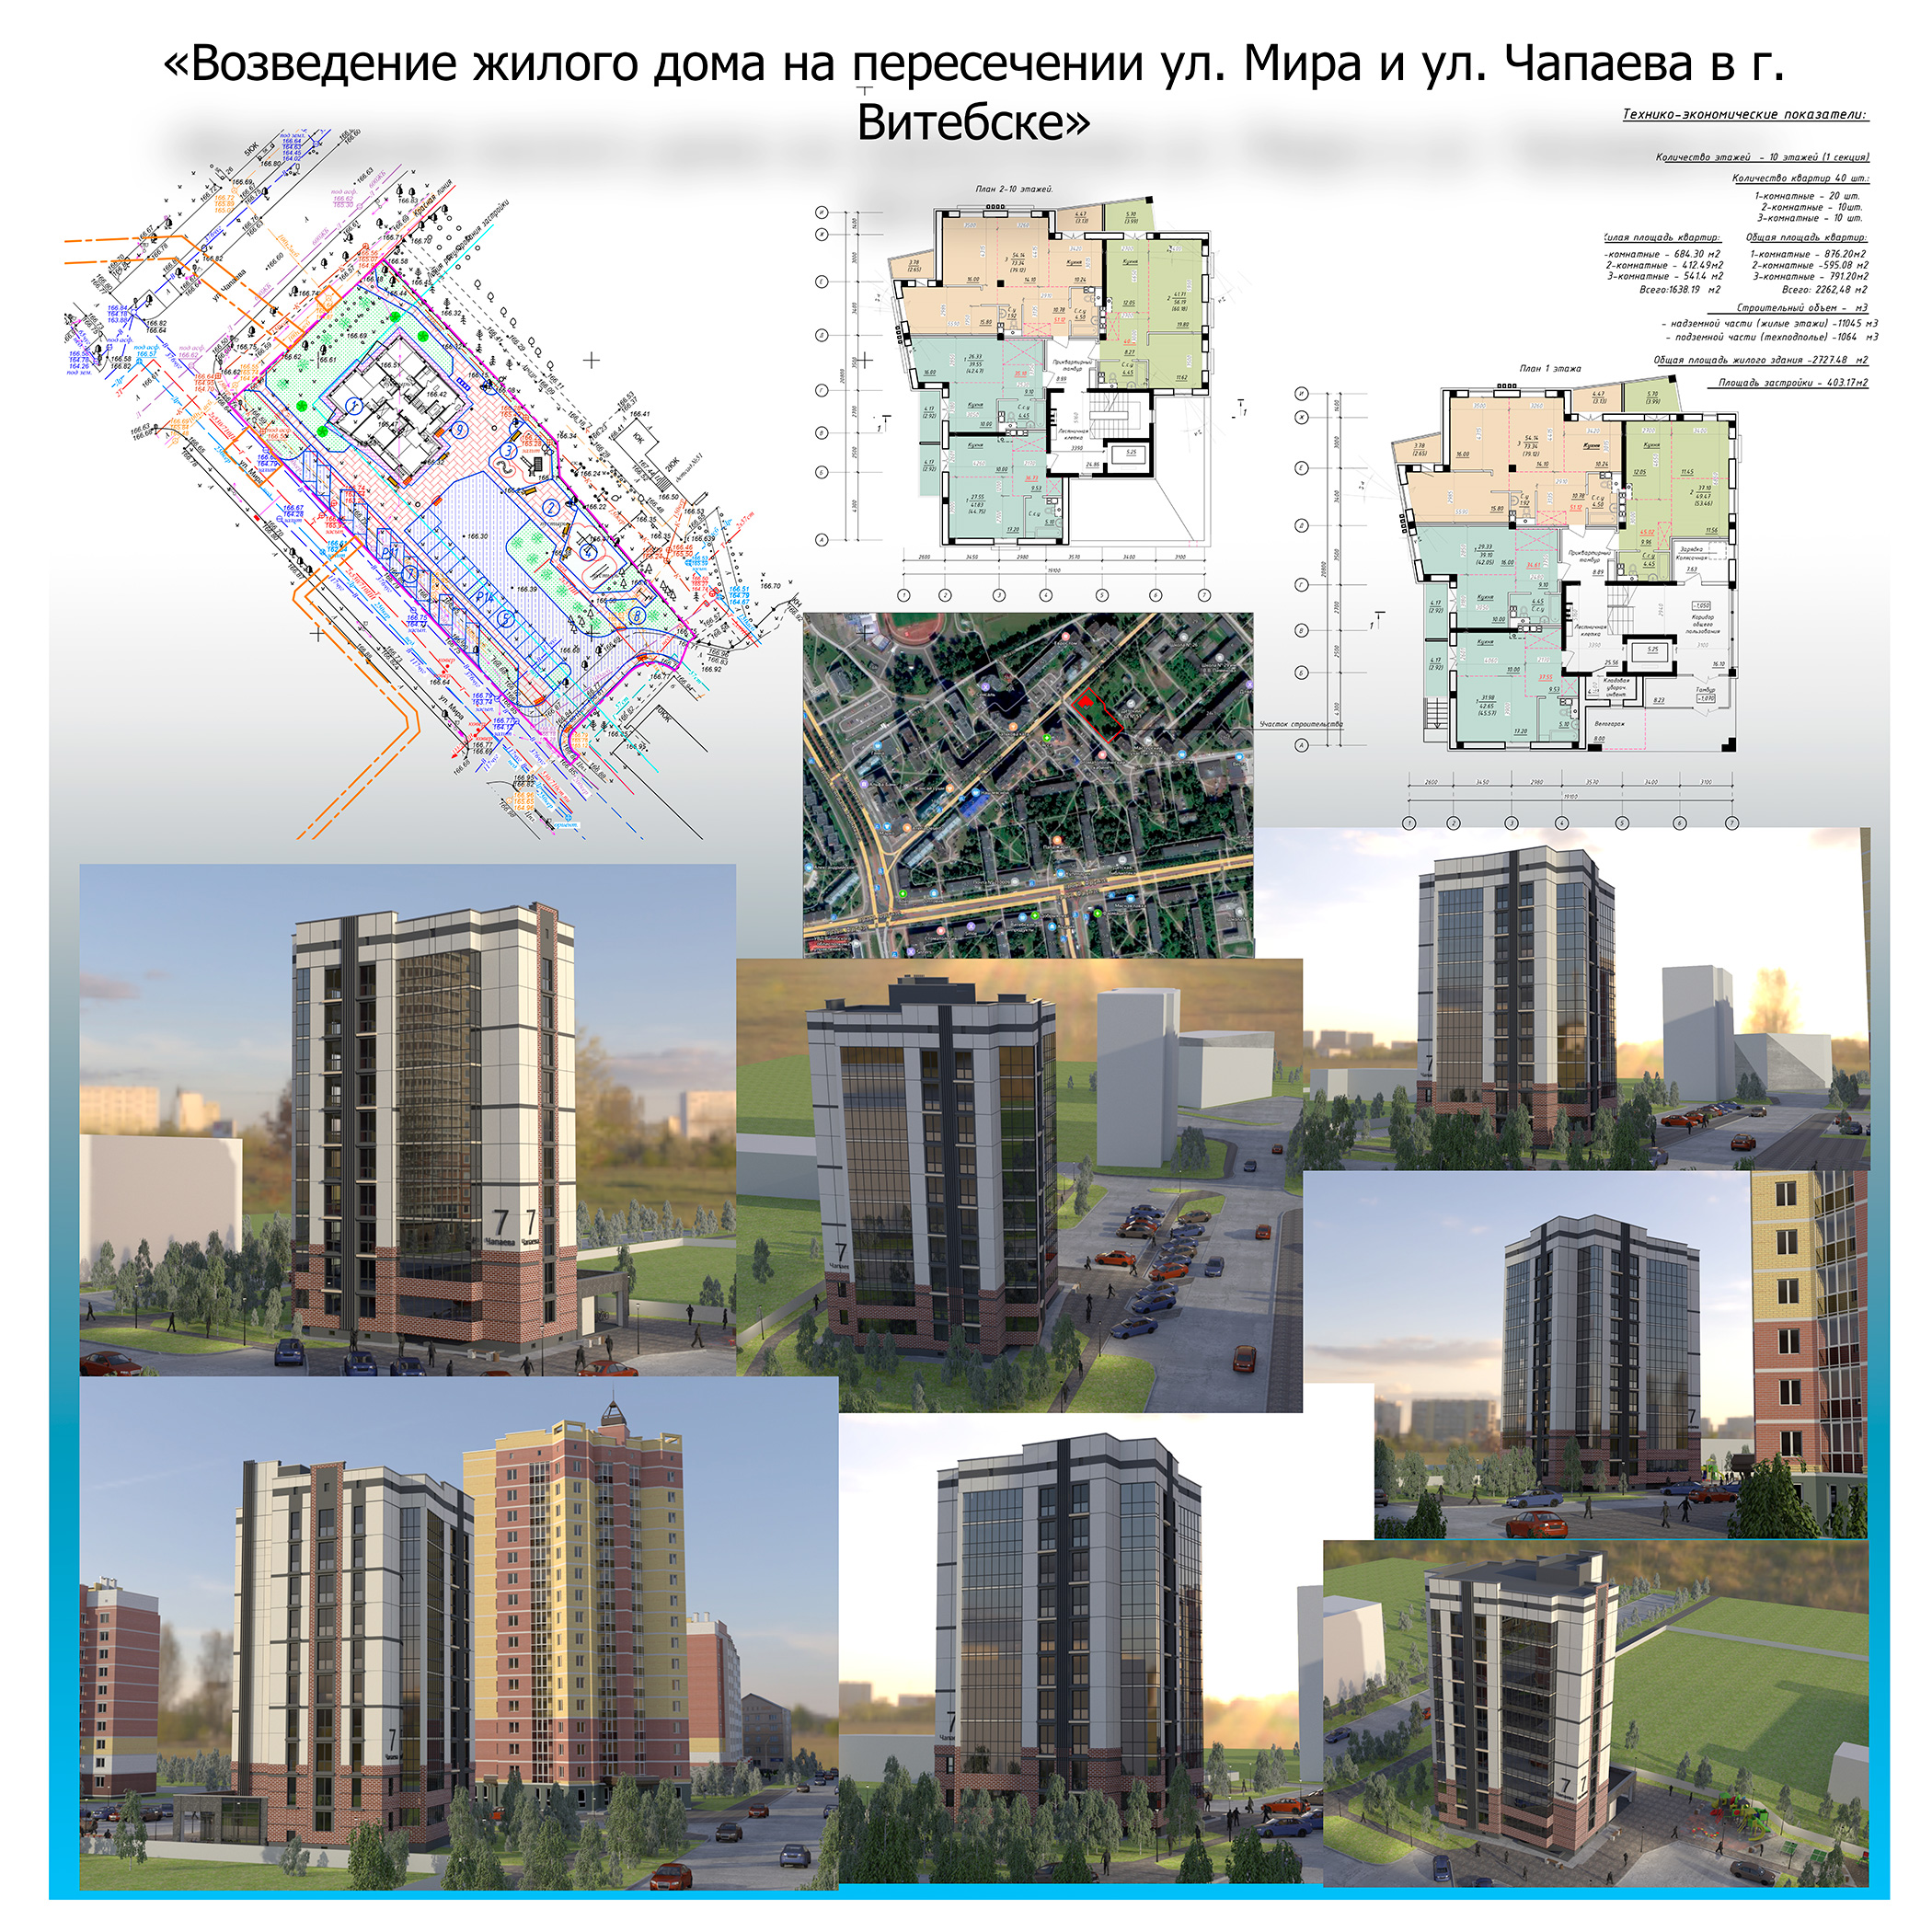 Новую высотку собираются построить на углу улиц Мира и Чапаева в Витебске